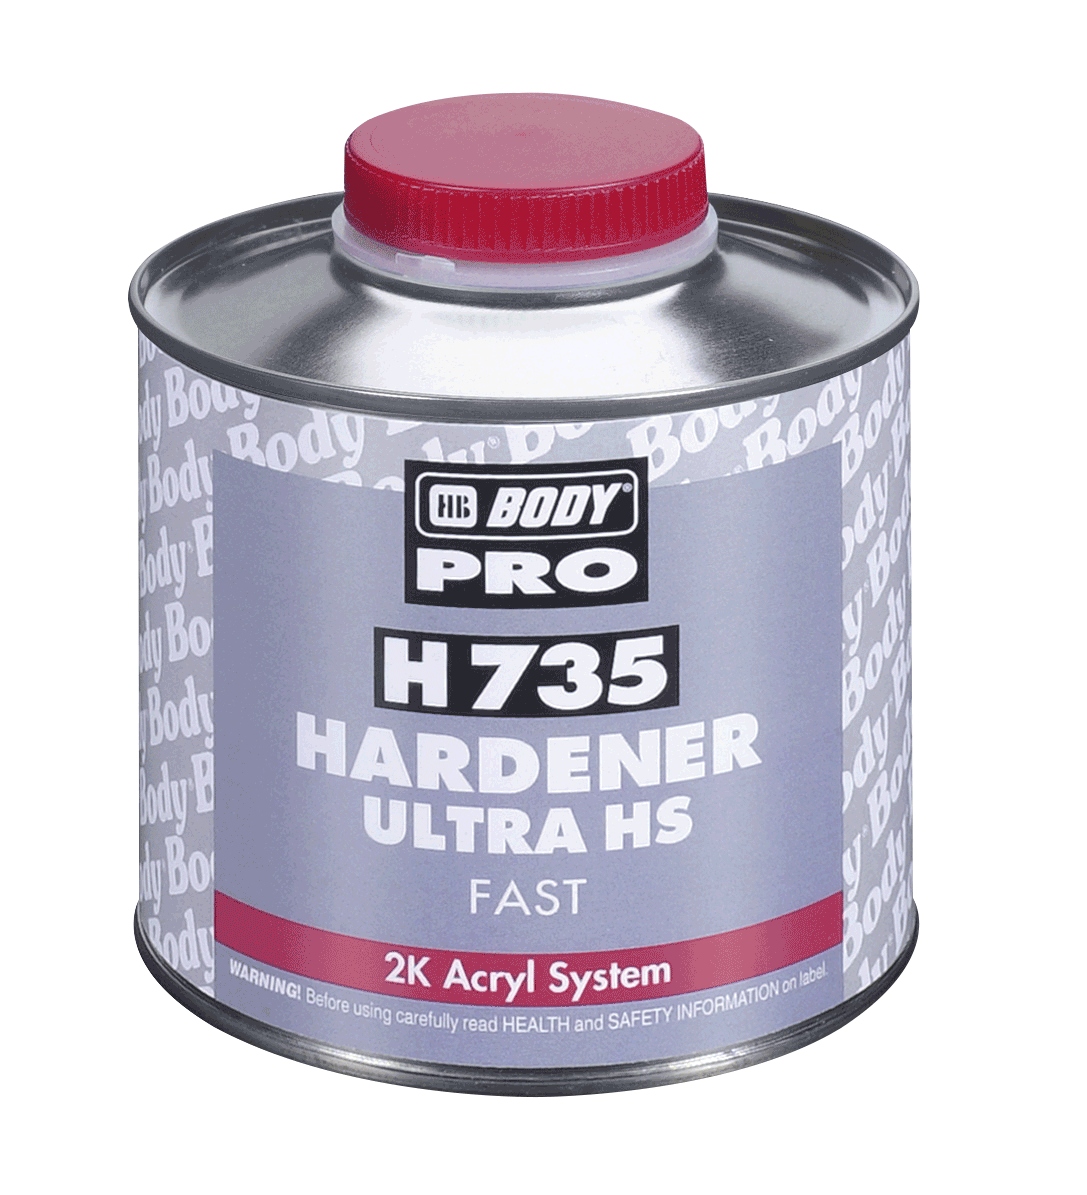 HB BODY Body 735 Hardener fast  2.5L